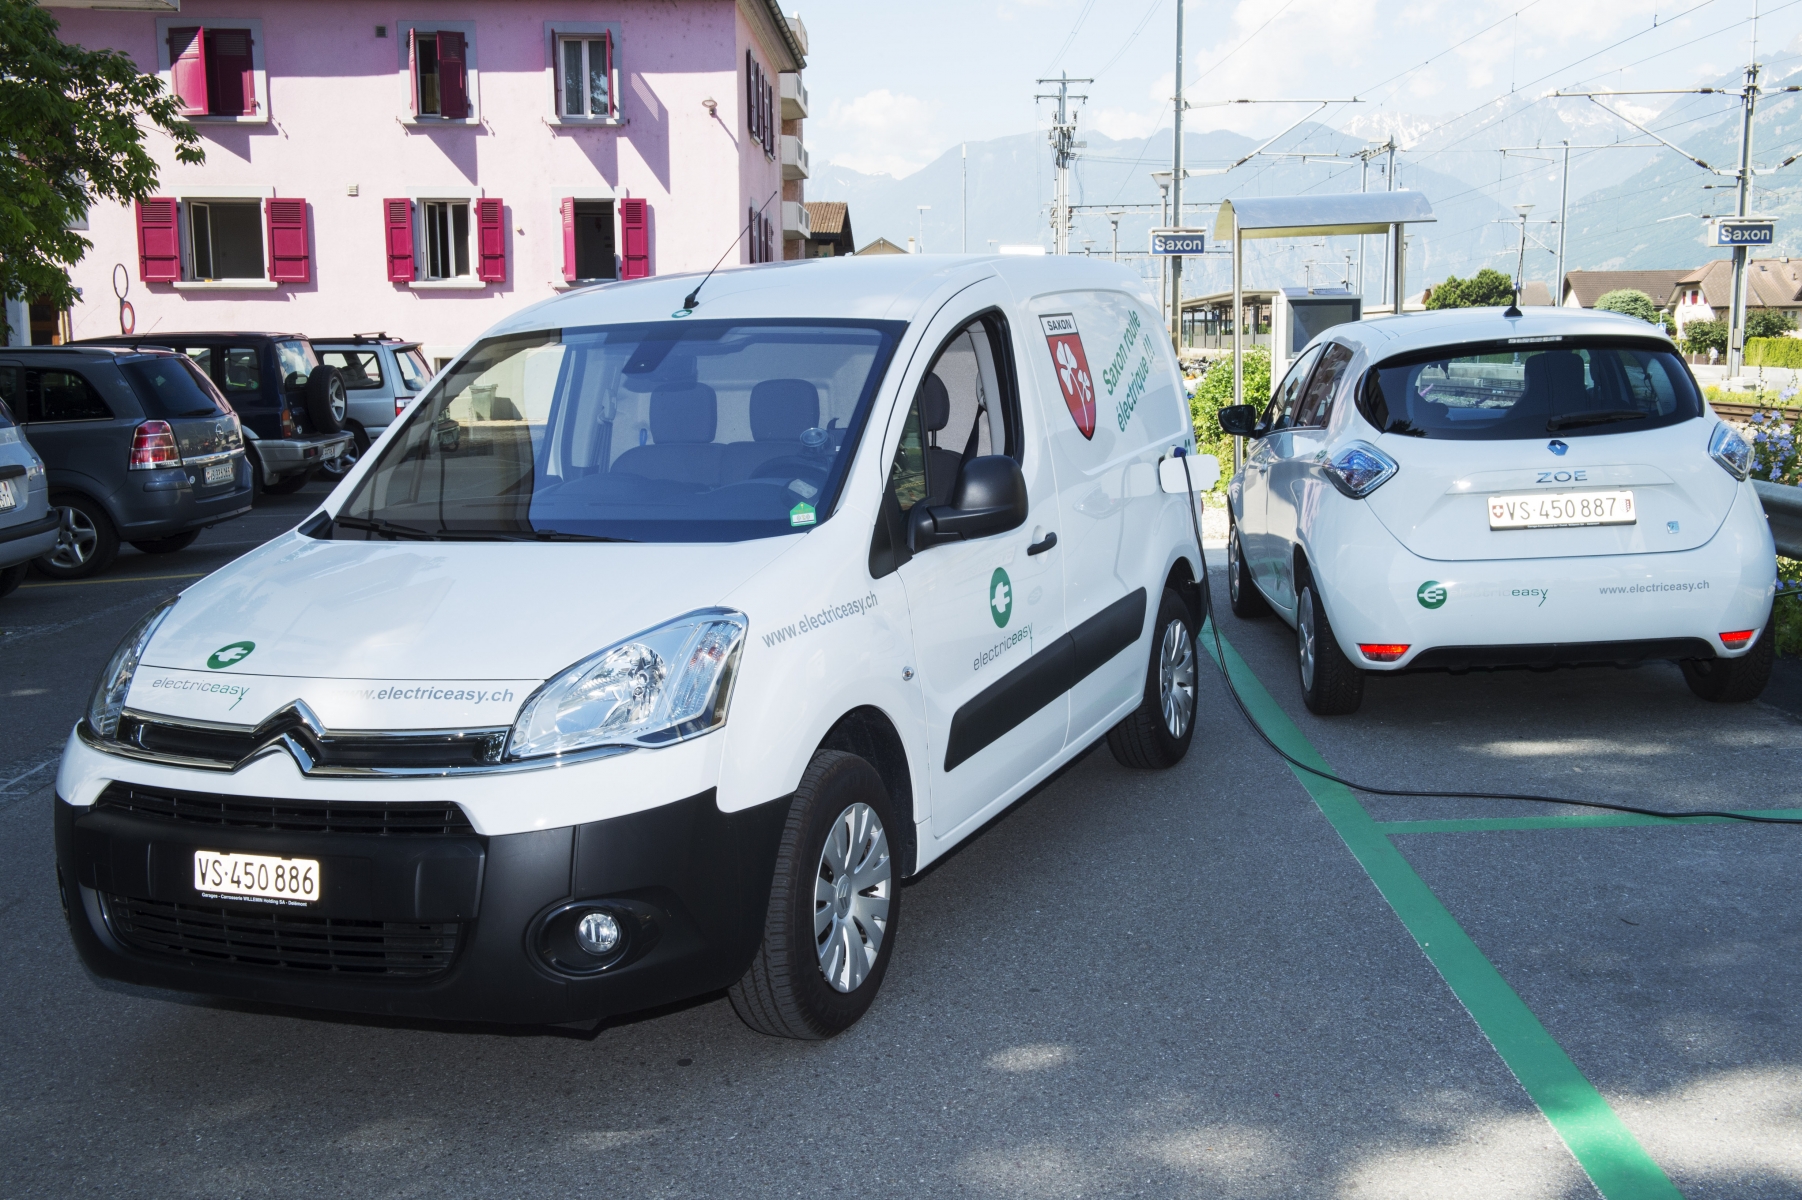 Un utilitaire et une voiture de tourisme composent la flotte saxonintze de voitures électriques en libre-service.